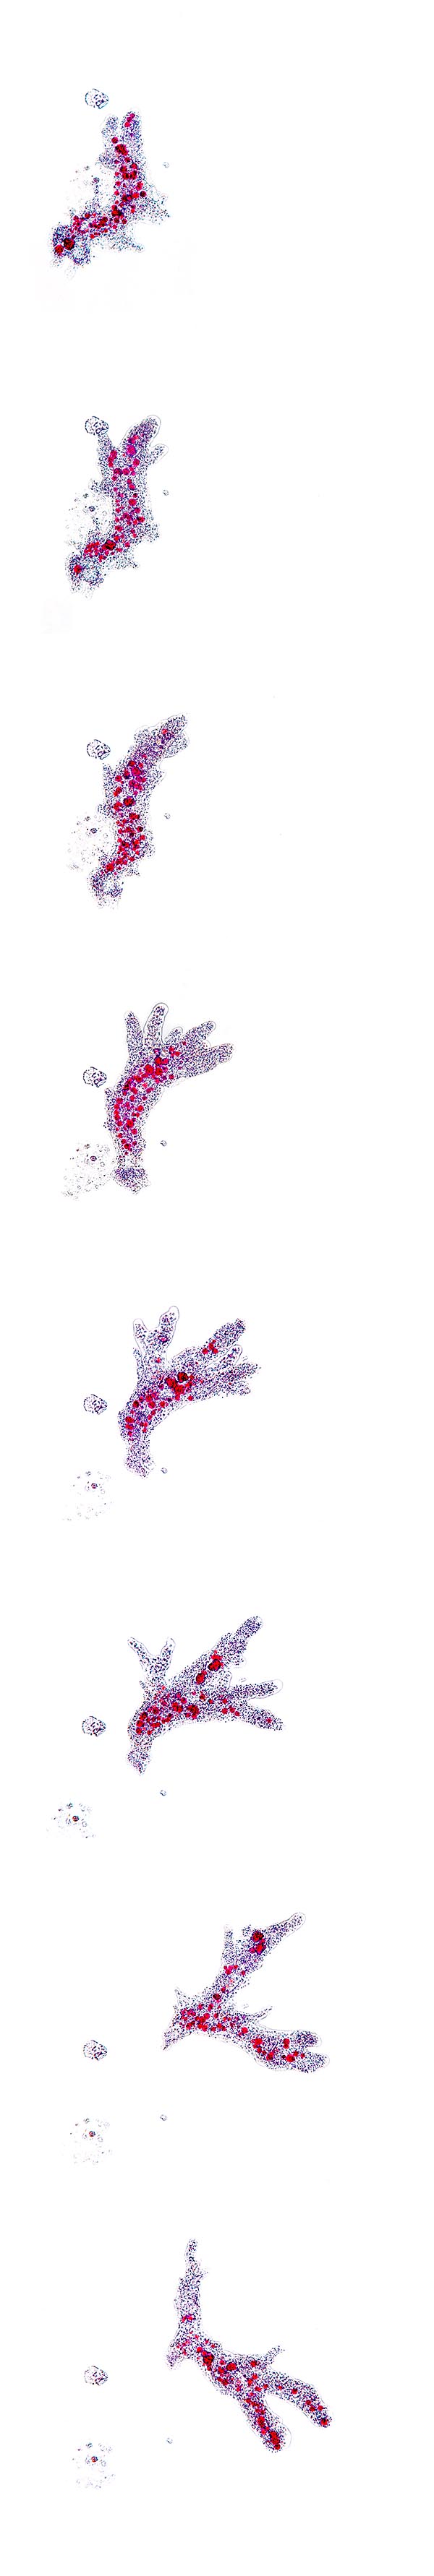 Sequenza del movimento di una Amoeba proteus © Giuseppe Mazza